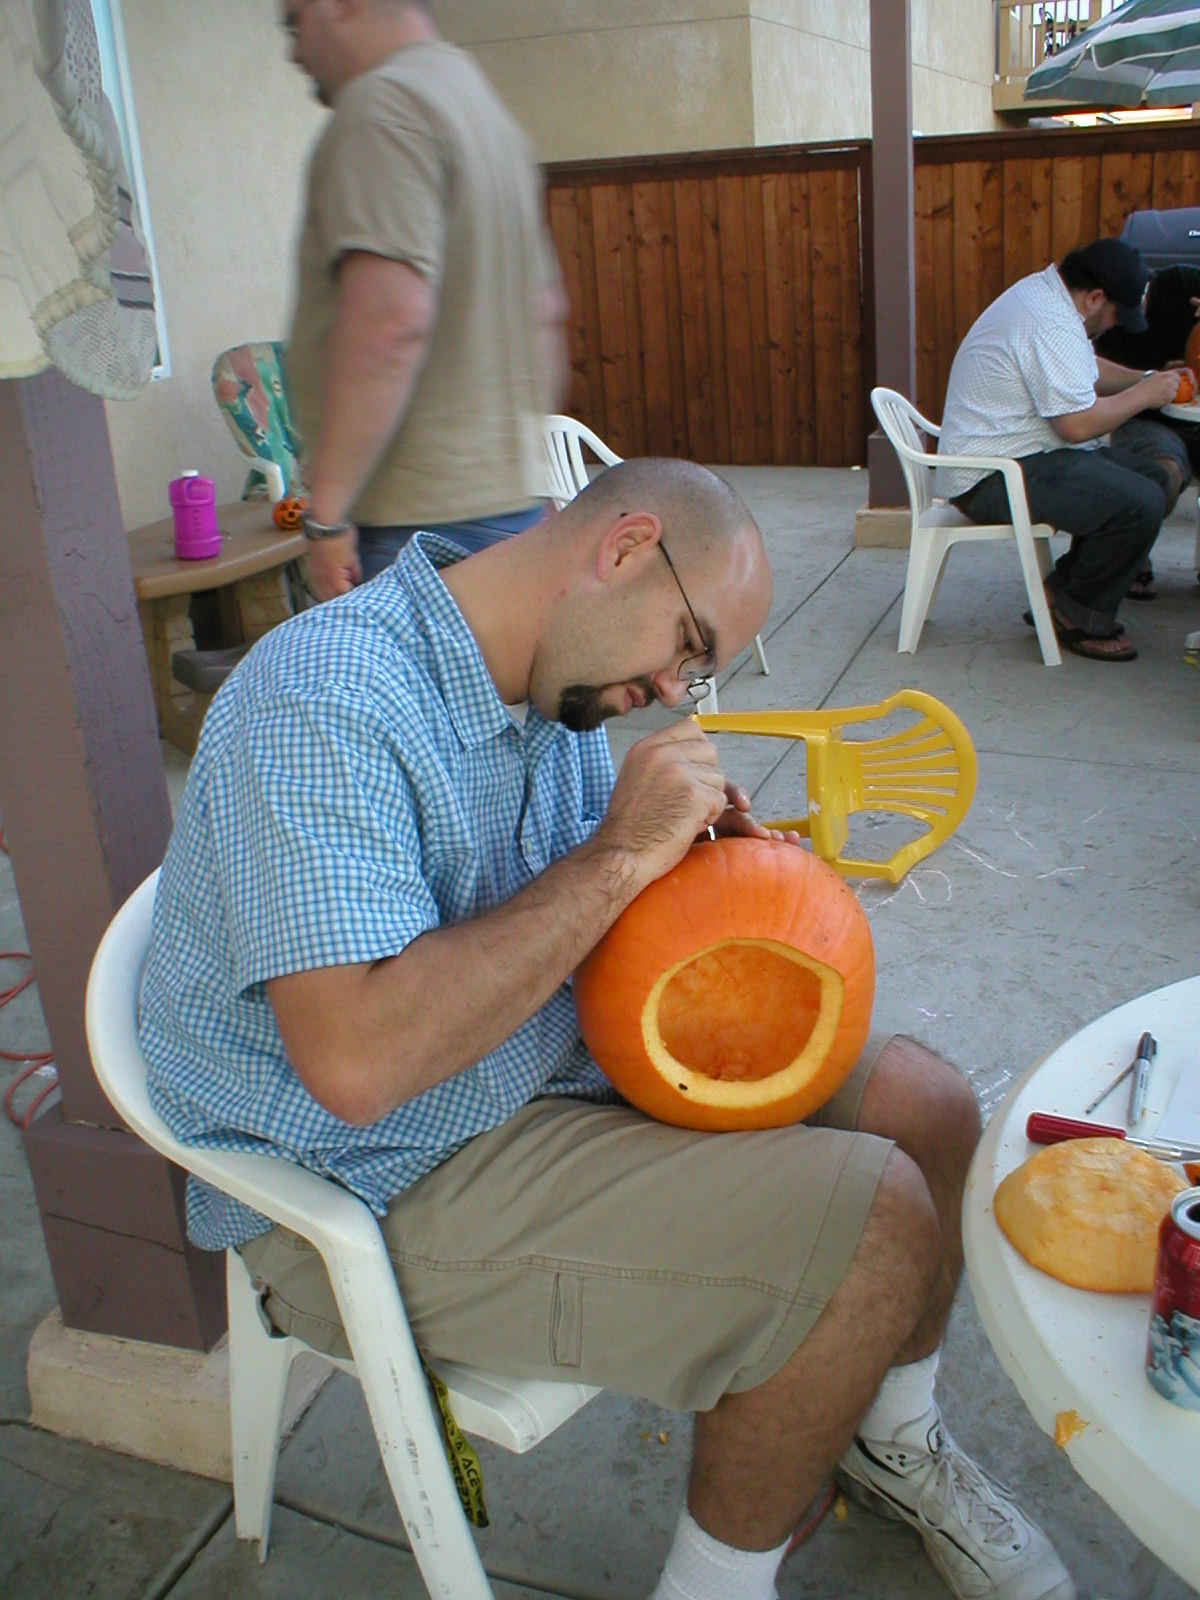 Ryan carving his pumpkin